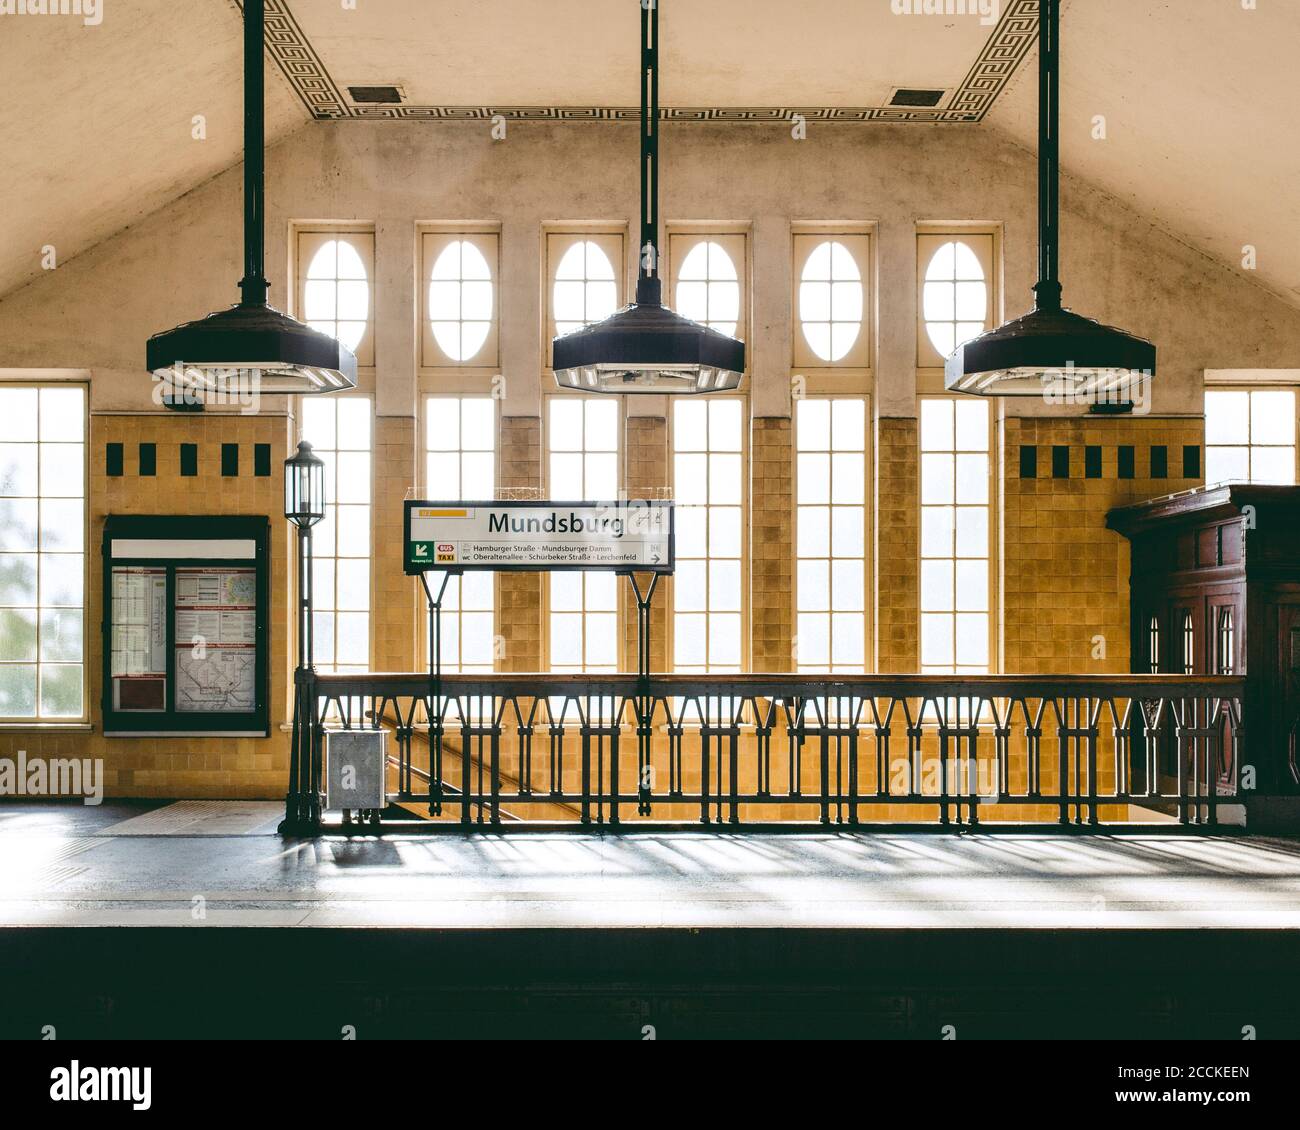 Allemagne, Hambourg, intérieur de la gare de Mundsburg Banque D'Images